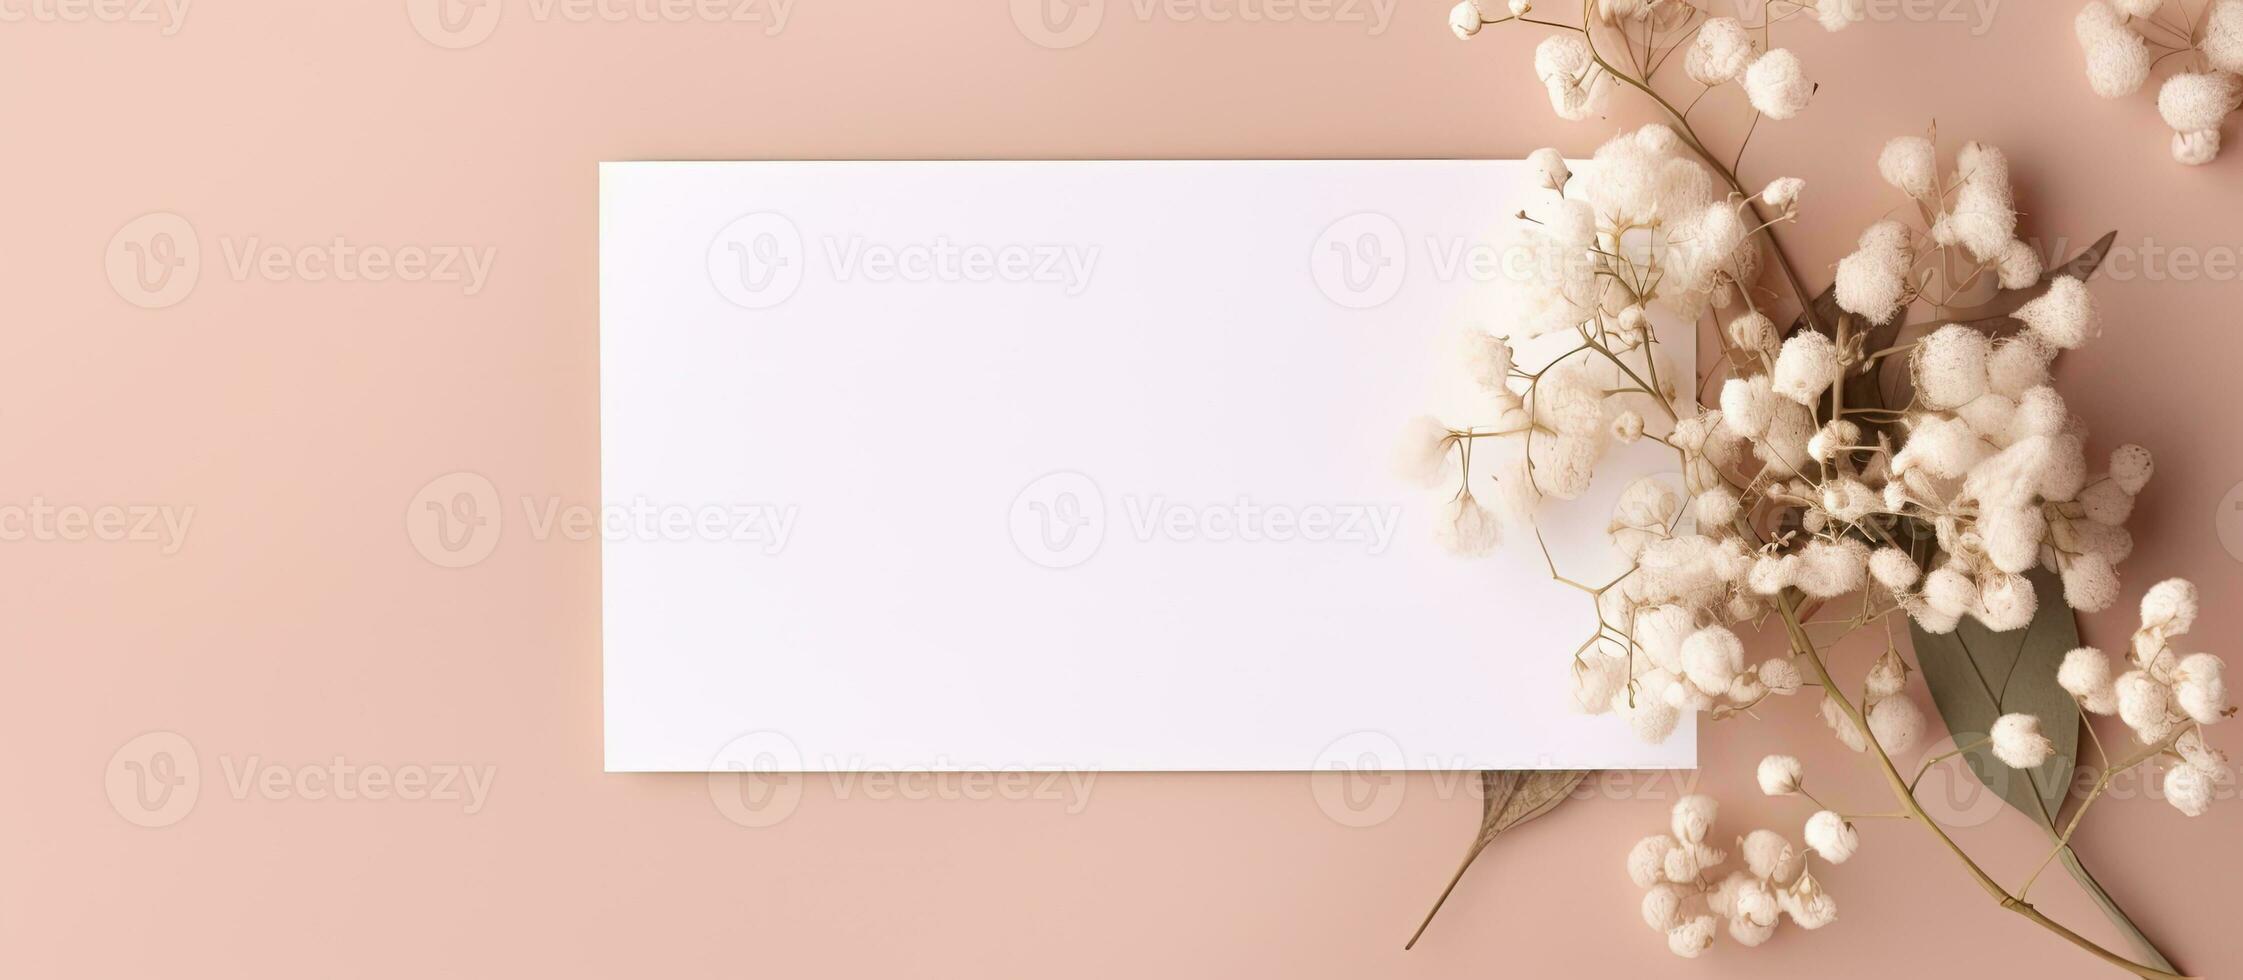 em branco Casamento convite cartão brincar apresentando natural eucalipto e branco Gypsophila plantar galhos. foto